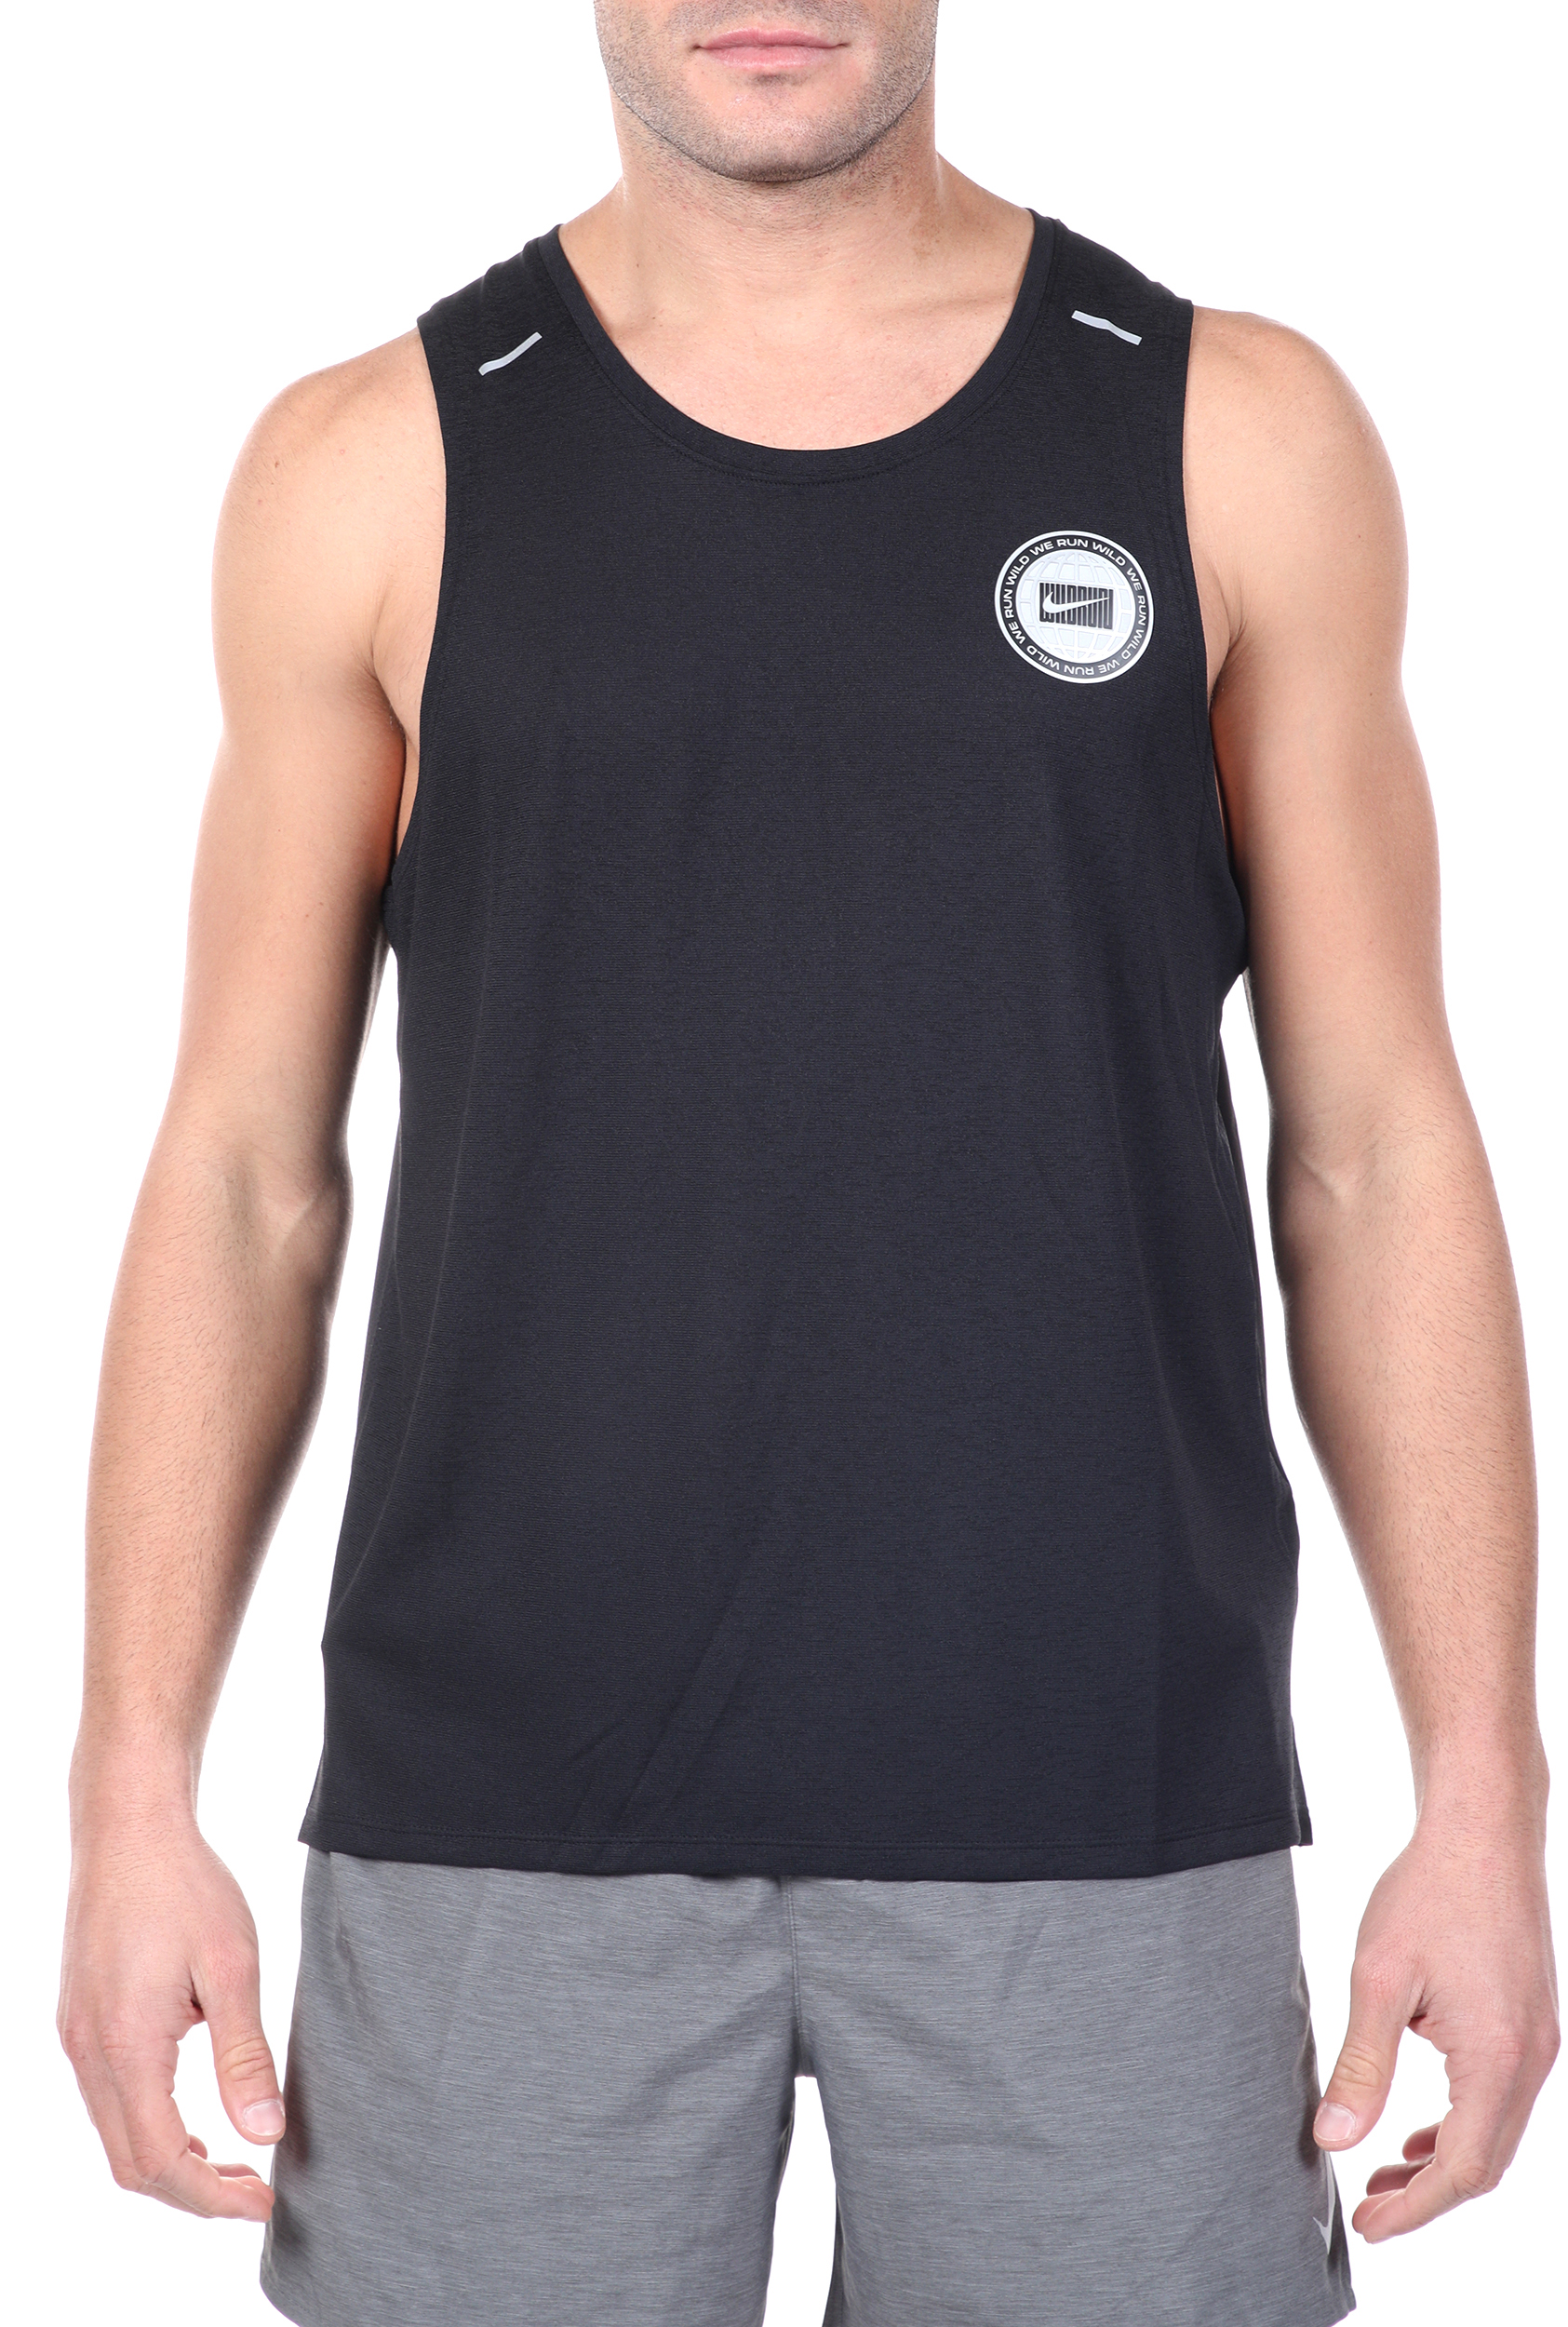 Ανδρικά/Ρούχα/Αθλητικά/T-shirt NIKE - Ανδρική μπλούζα NIKE DF MILER TANK WR GX μαύρη